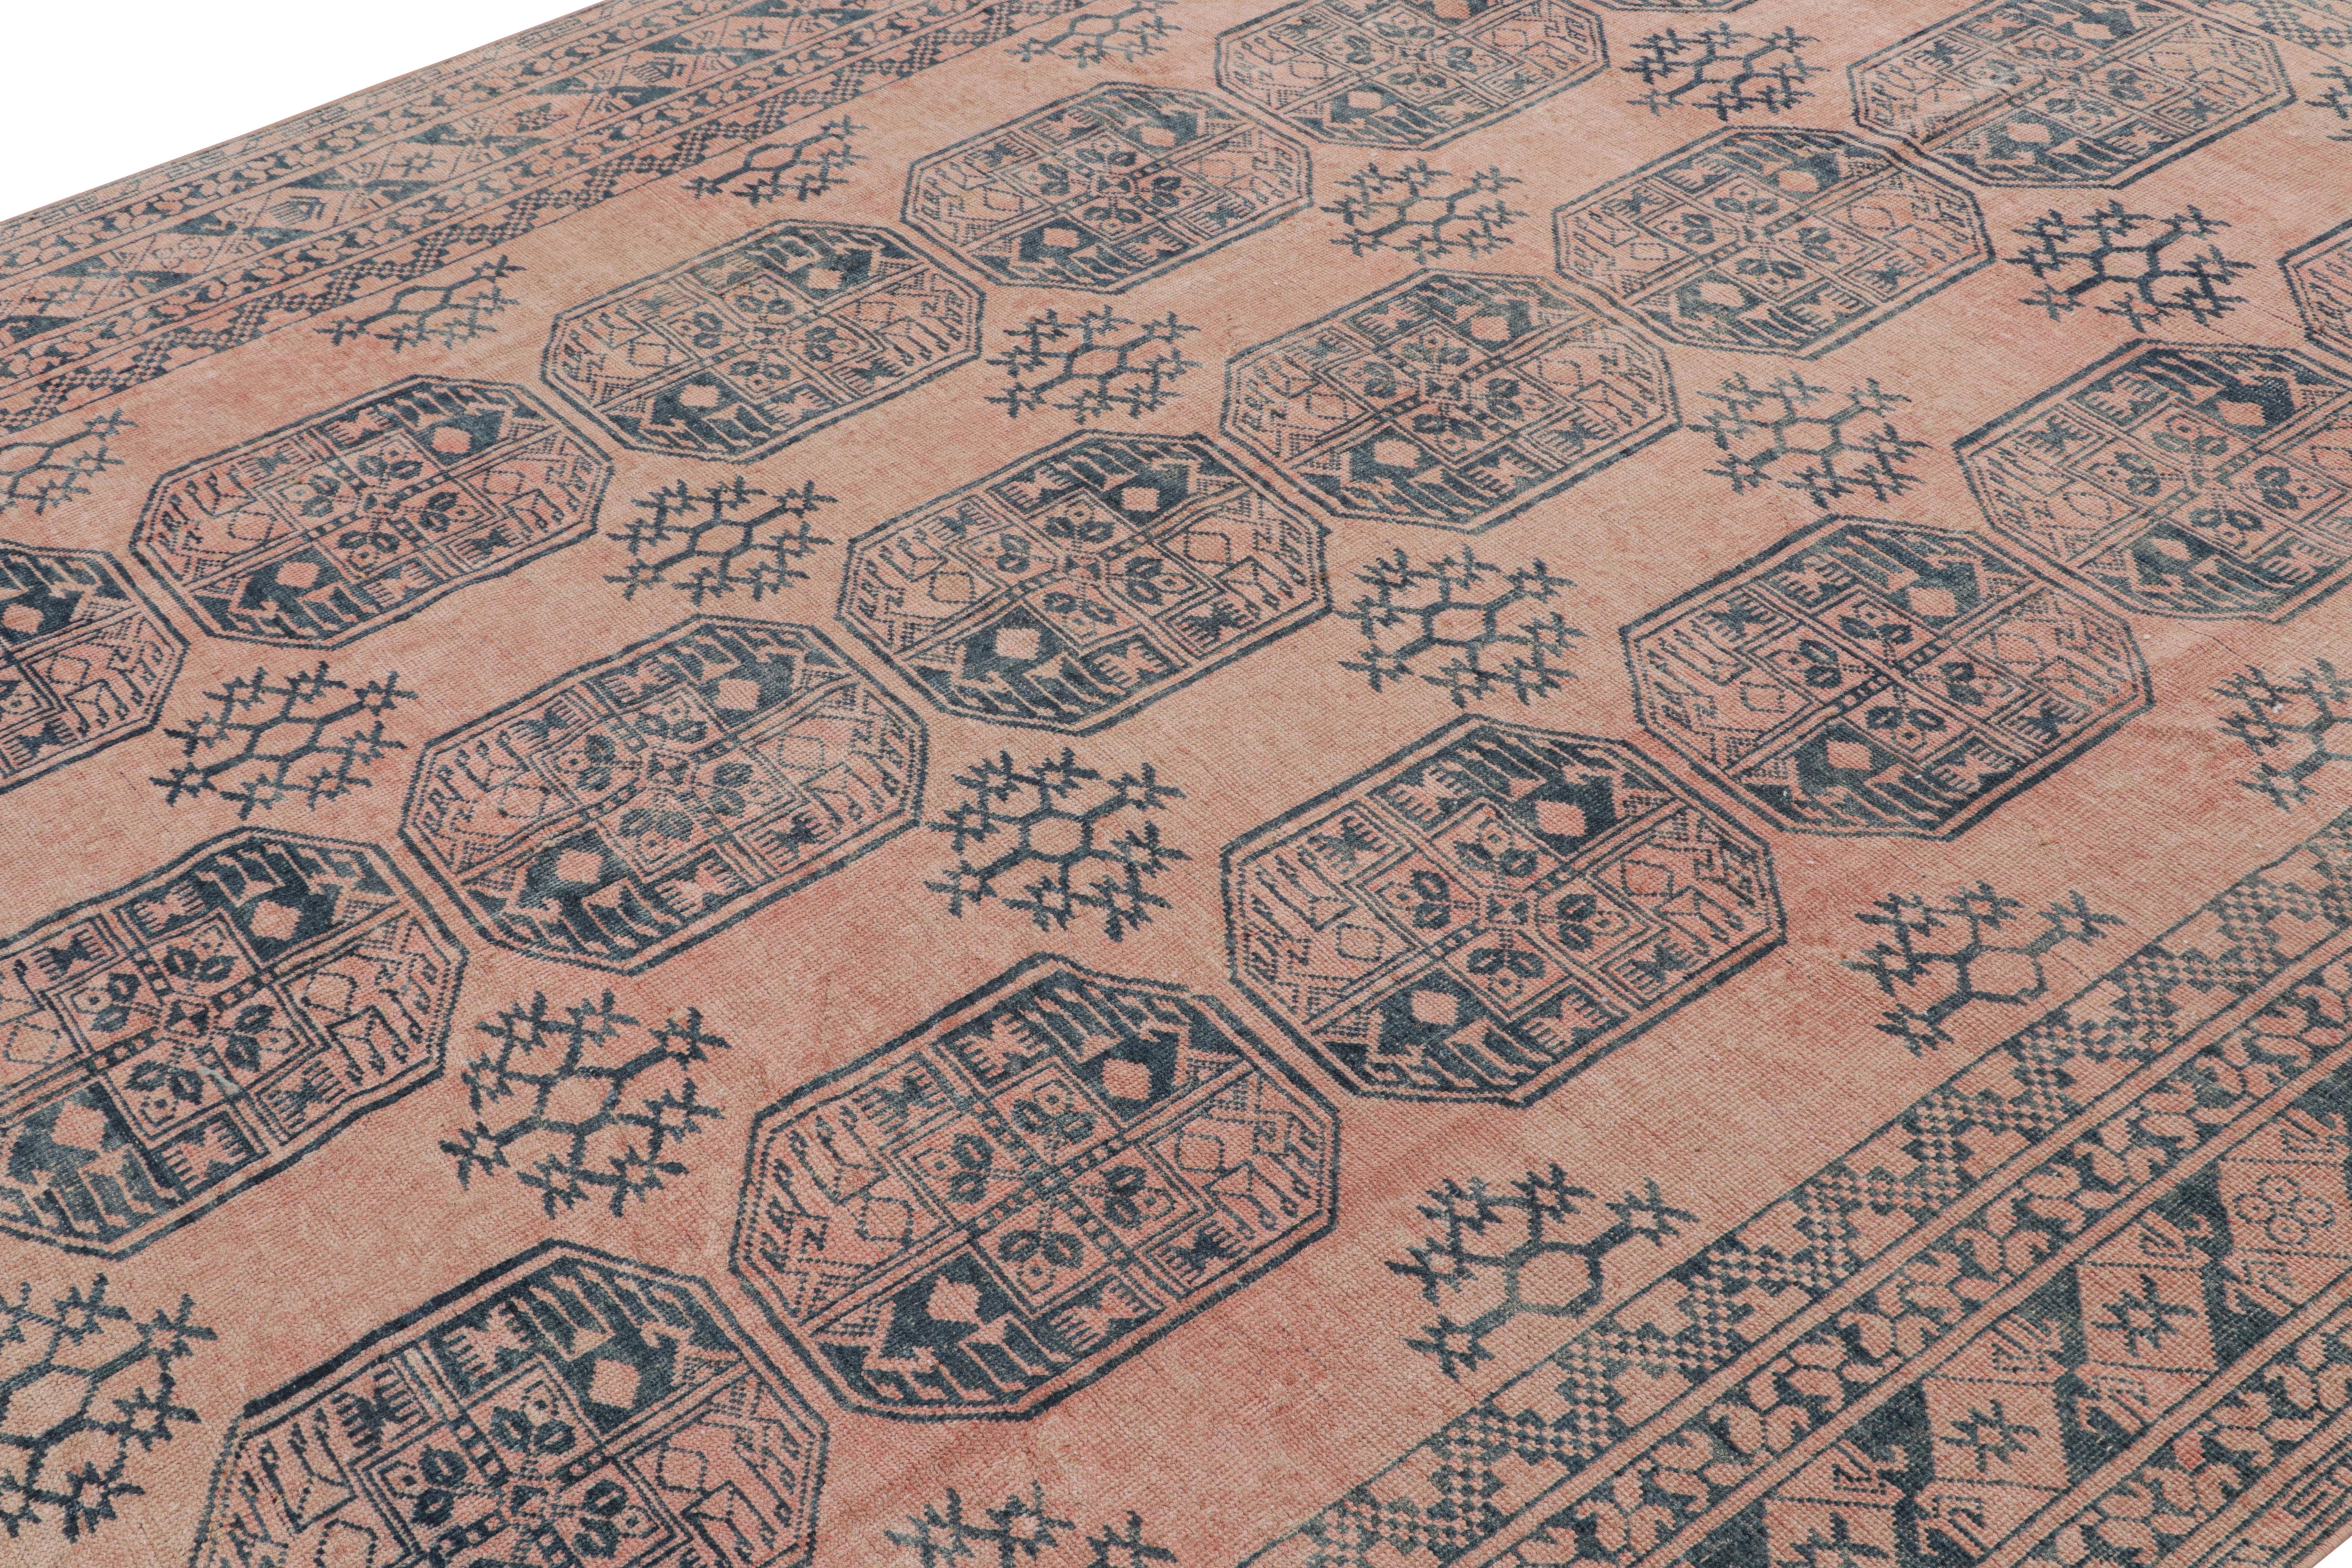 Ce tapis vintage 8x10 est considéré comme un rare tapis Ersari du milieu du siècle, noué à la main en laine et originaire de Turquie vers 1950-1960.

Sur le Design :

Les Ersari sont une sous-tribu du peuple turkmène, souvent connue pour ses dessins